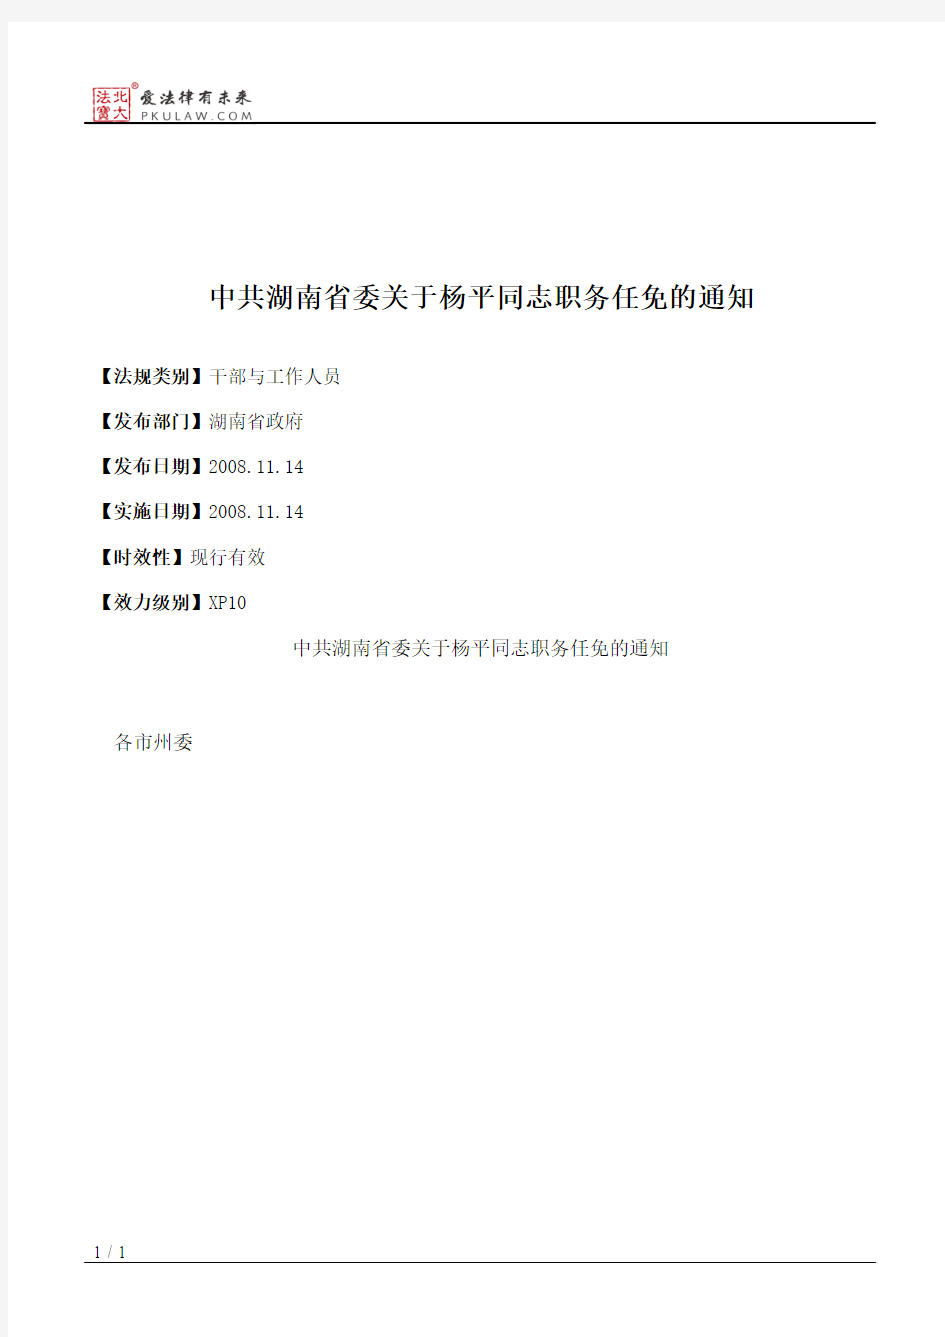 中共湖南省委关于杨平同志职务任免的通知